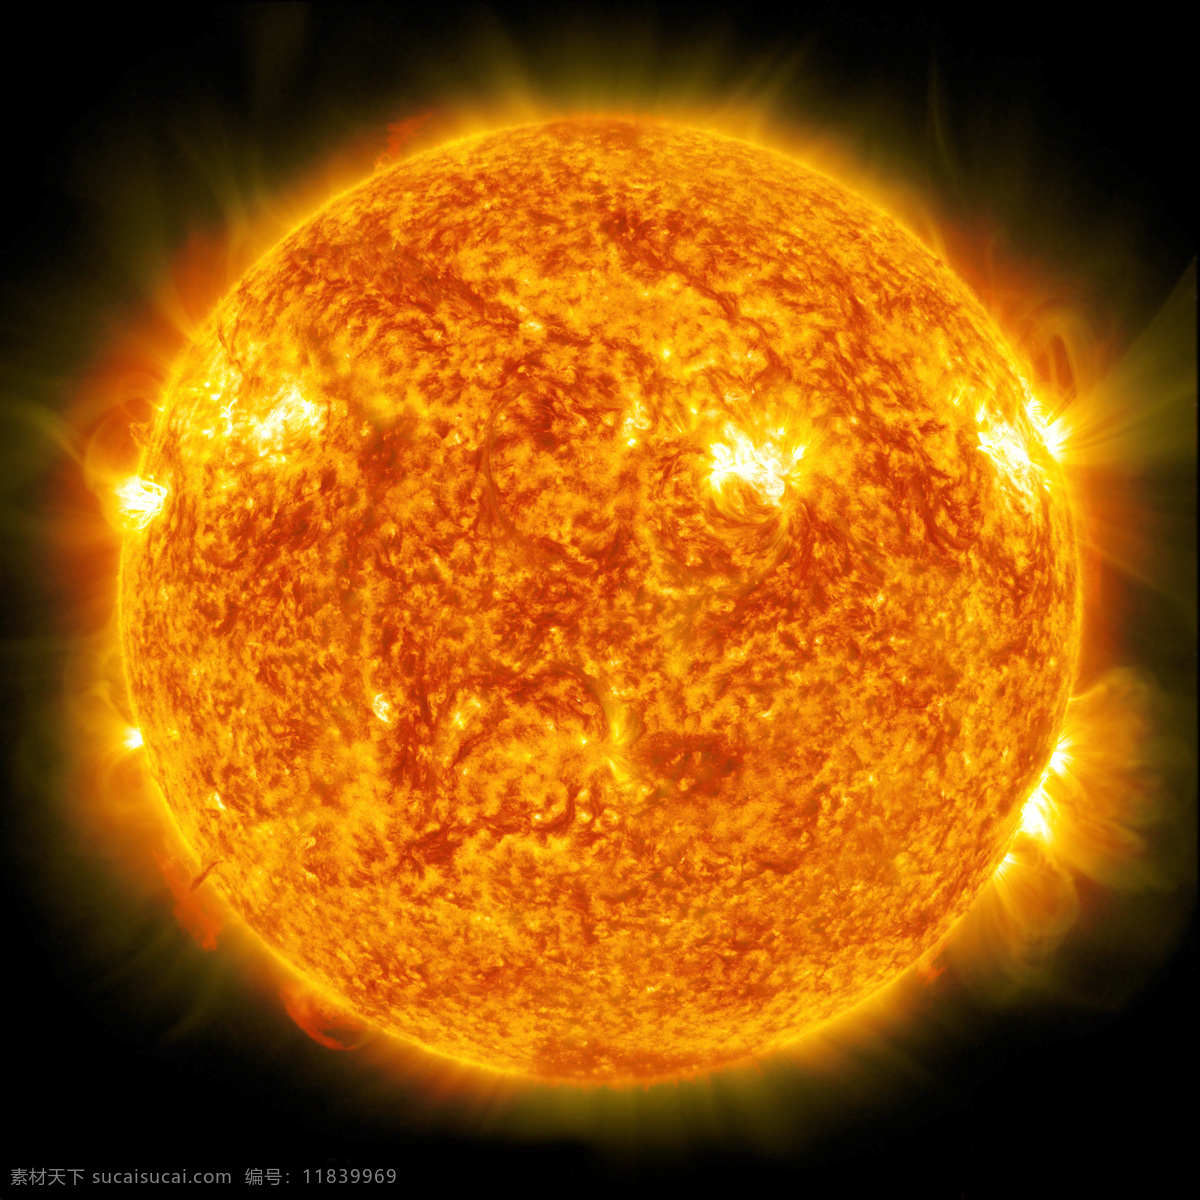 恒星 火焰 喷发 燃烧 炙热 炽热 阳光 能量 能源 日冕 太阳粒子 火球 宇宙星空 自然景观 自然风光